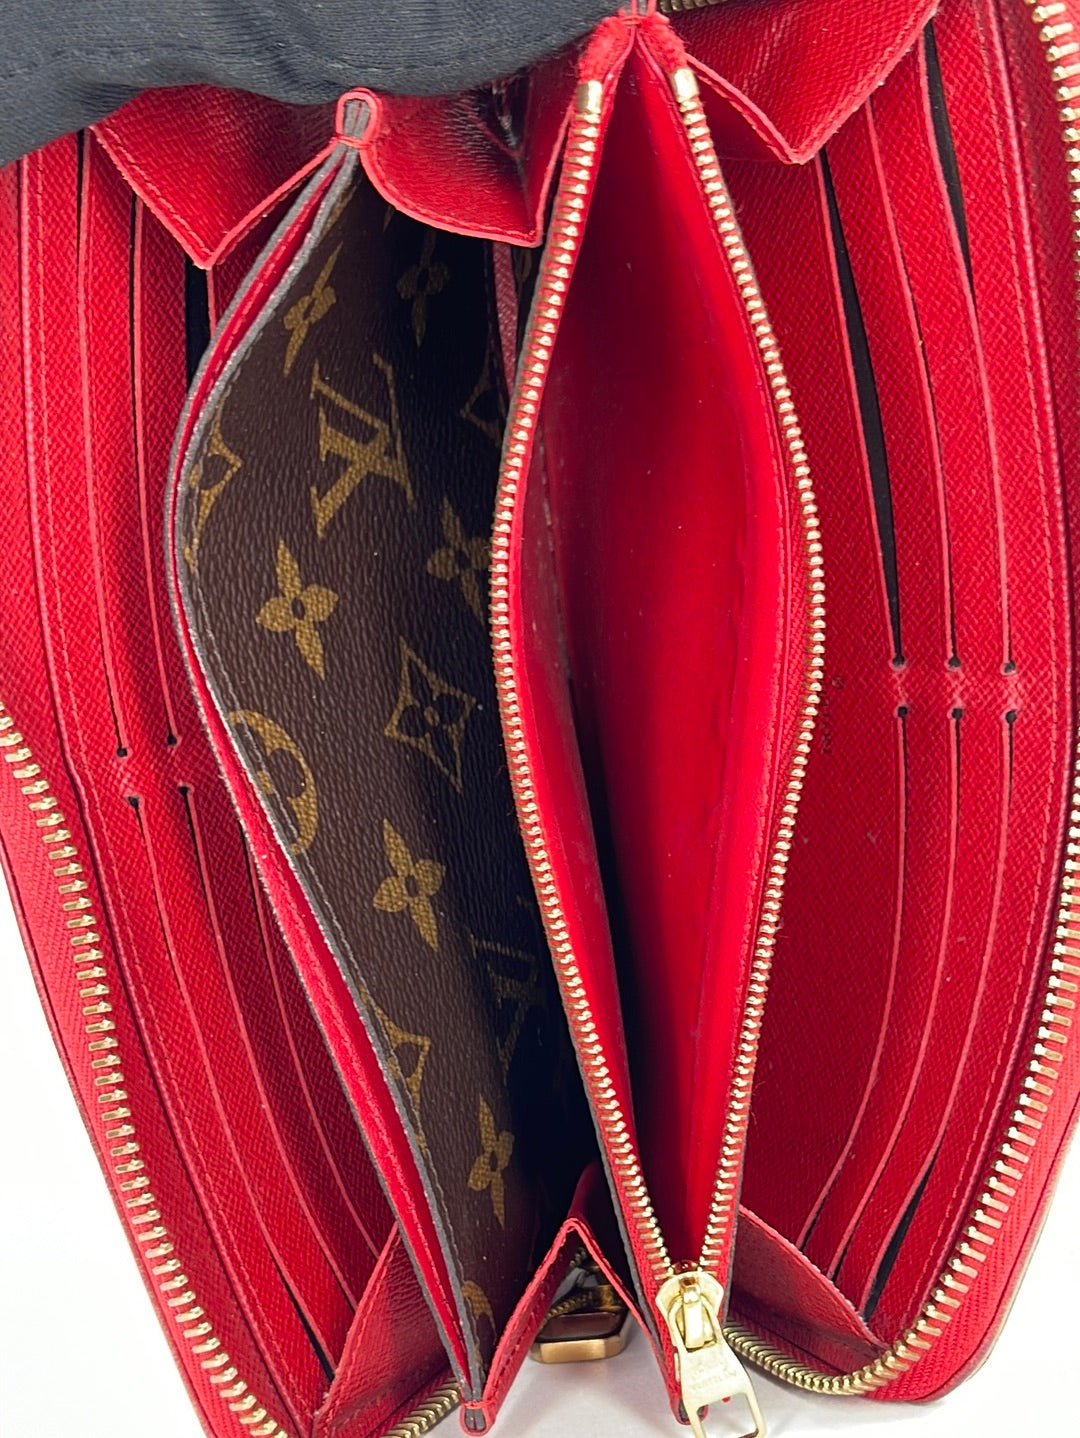 Shop Louis Vuitton Zippy wallet retiro (M61854) by CITYMONOSHOP